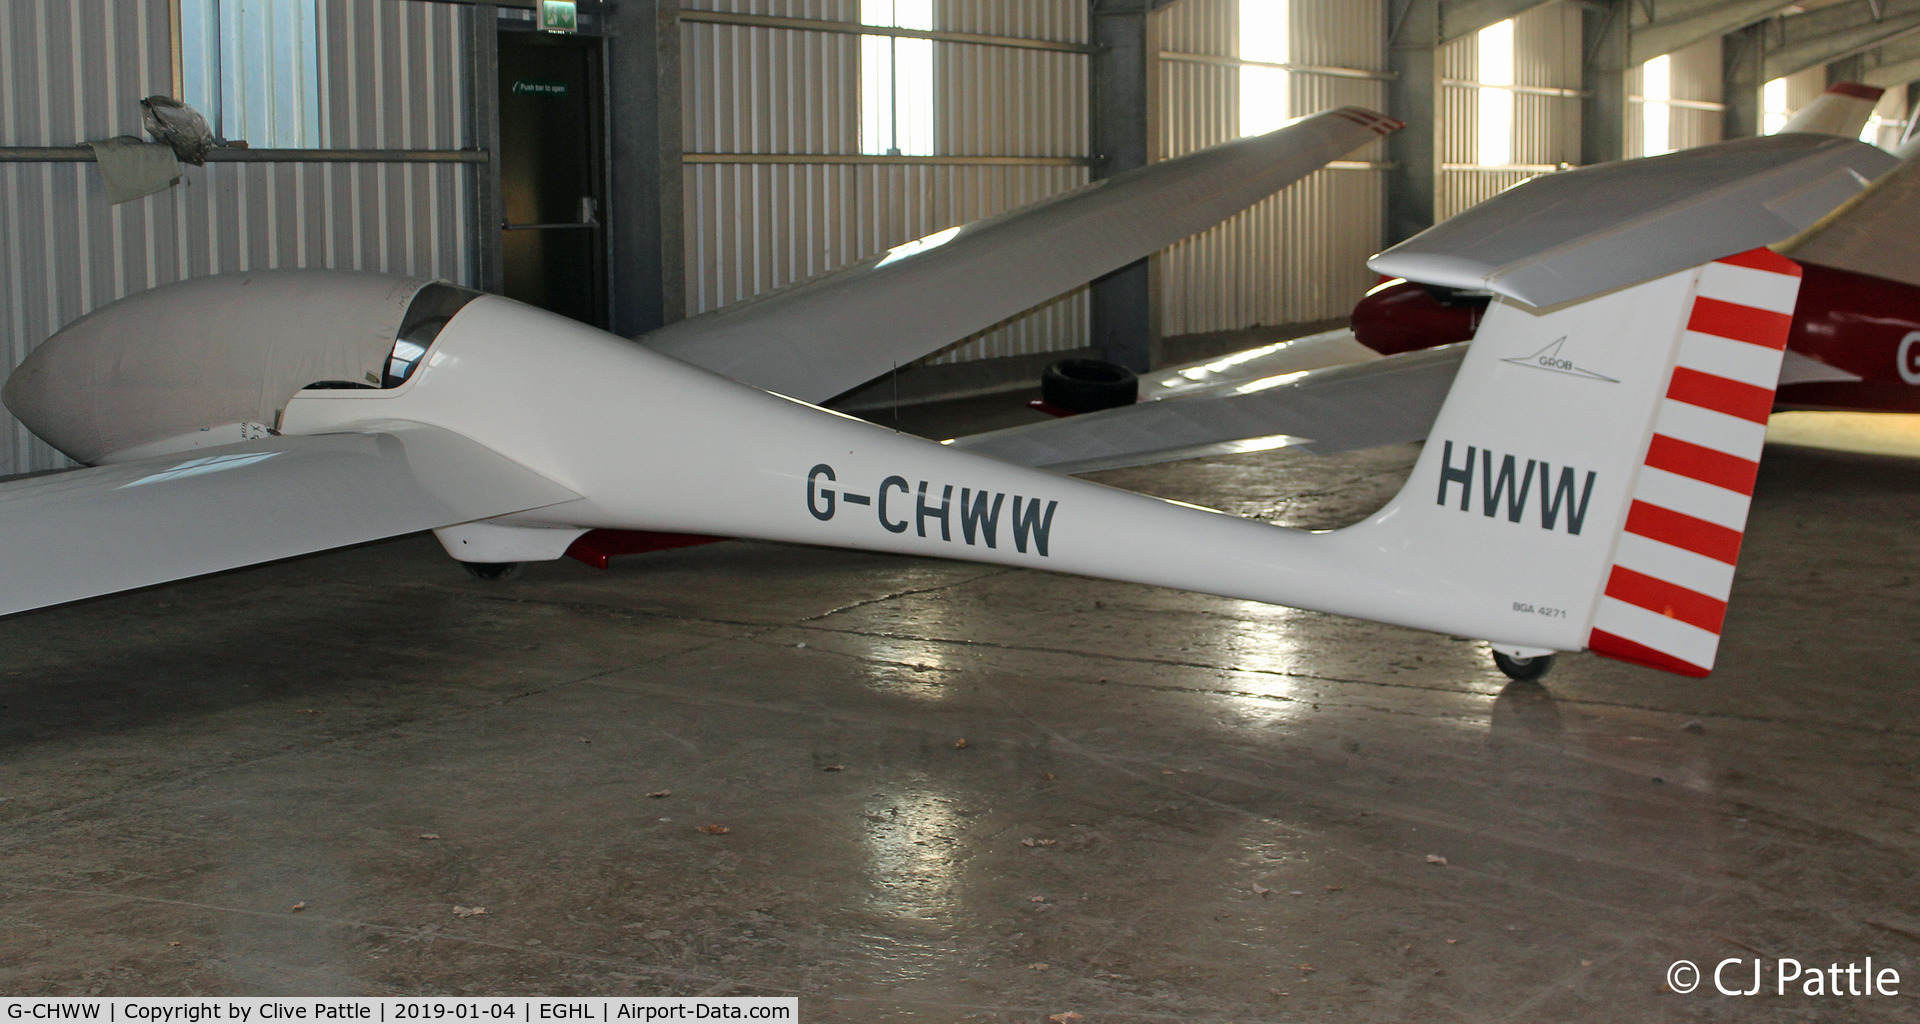 G-CHWW, 1981 Grob G-103A Twin II Acro C/N 3658-K-27, Hangared @ Lasham